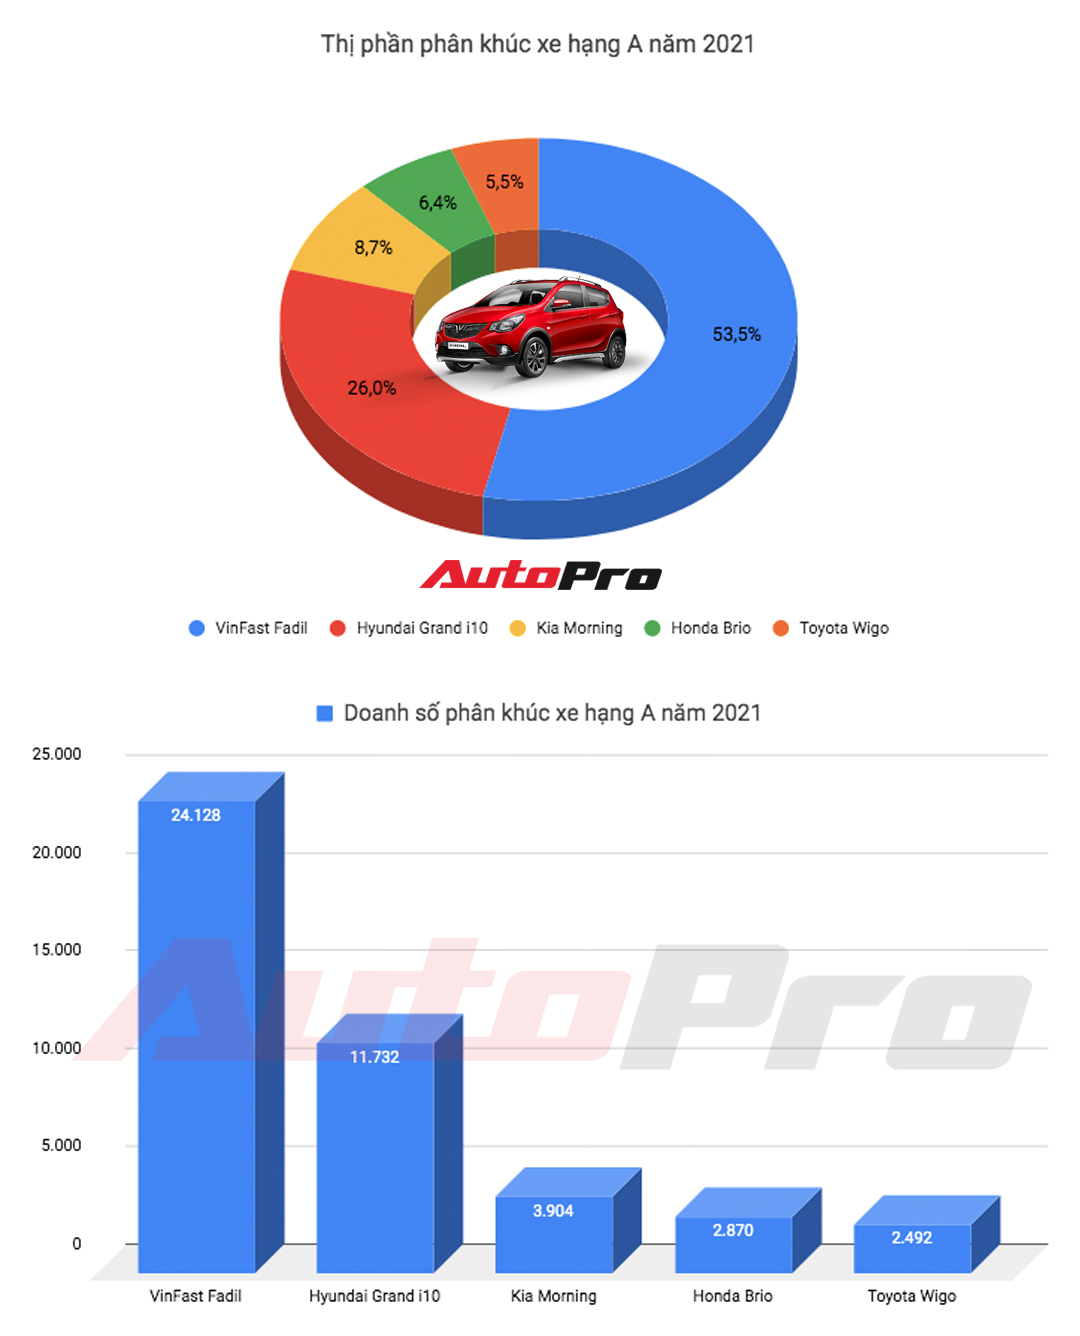 VinFast Fadil bán hơn gấp đôi Hyundai i10, lật đổ ngôi vua doanh số của Toyota Vios sau 7 năm thống trị - Ảnh 1.